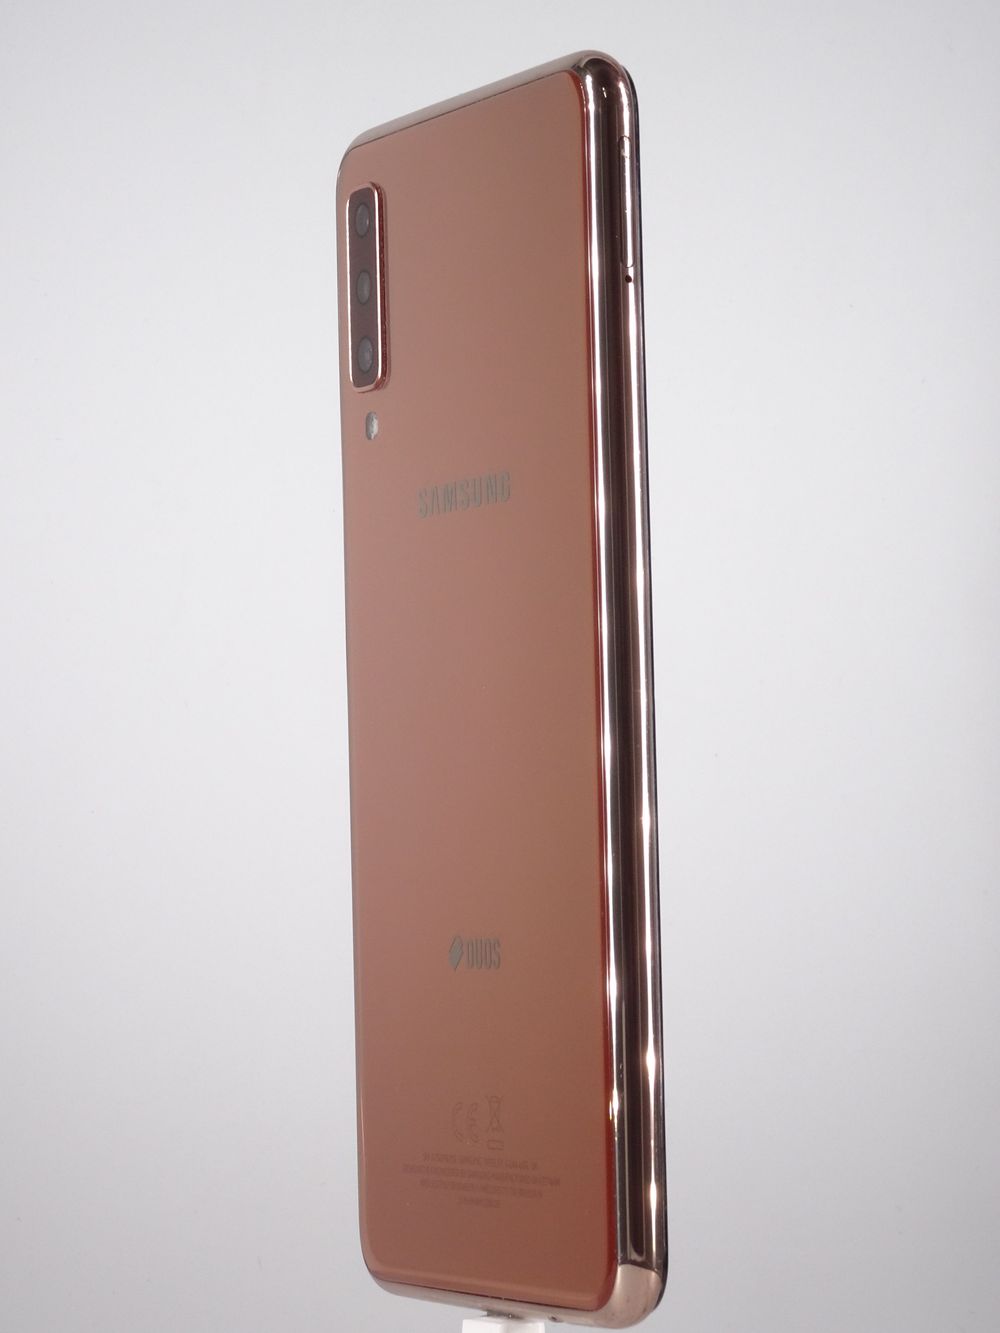 Мобилен телефон Samsung, Galaxy A7 (2018), 64 GB, Gold,  Като нов